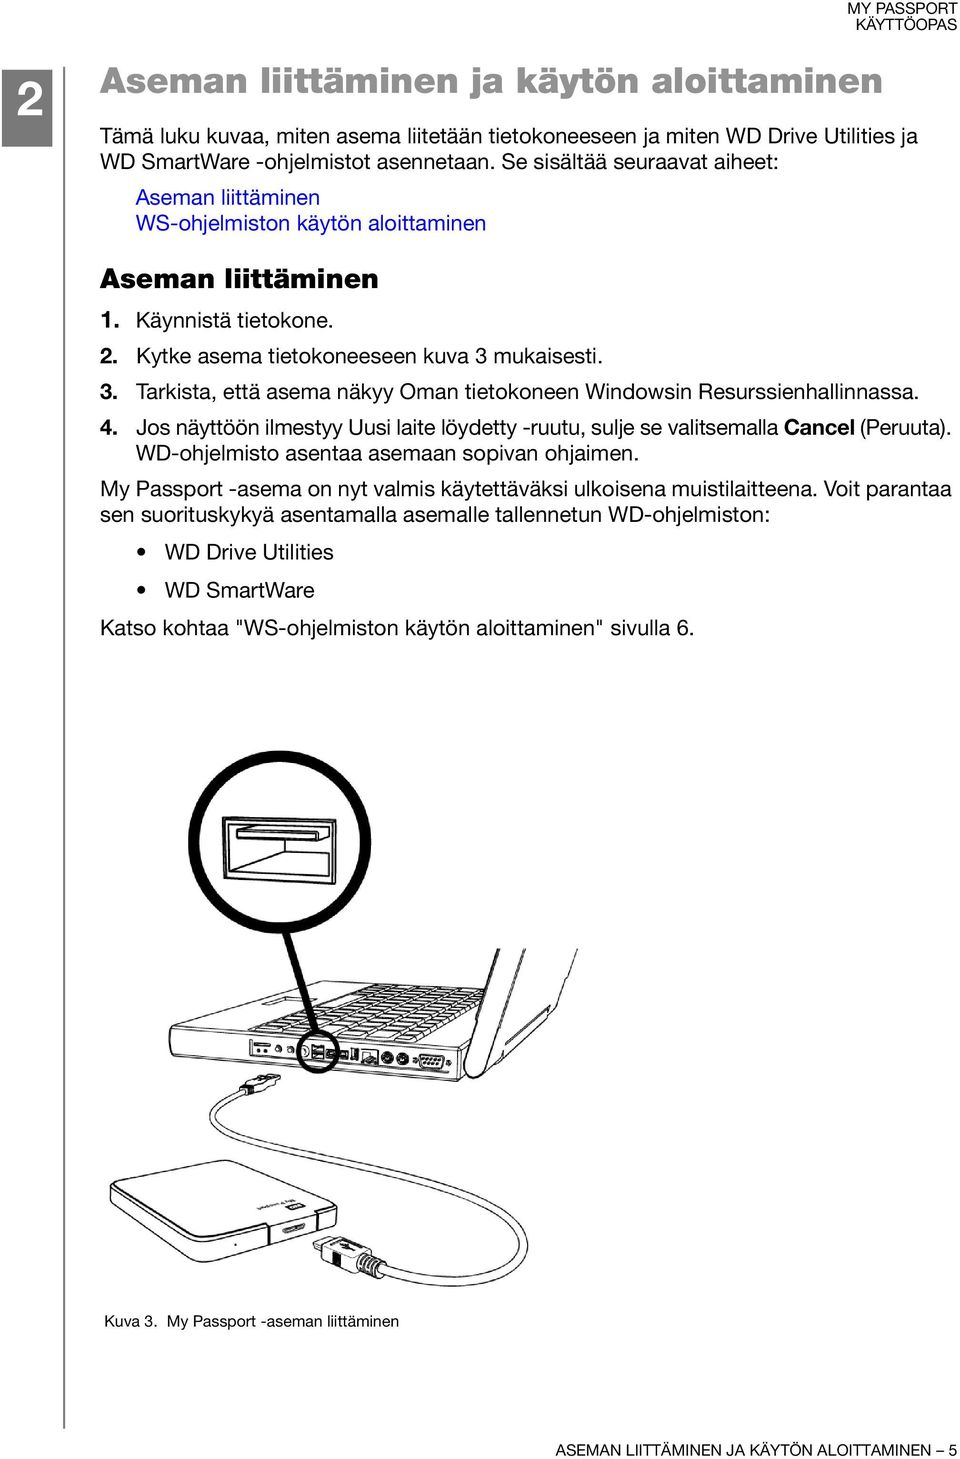 mukaisesti. 3. Tarkista, että asema näkyy Oman tietokoneen Windowsin Resurssienhallinnassa. 4. Jos näyttöön ilmestyy Uusi laite löydetty -ruutu, sulje se valitsemalla Cancel (Peruuta).